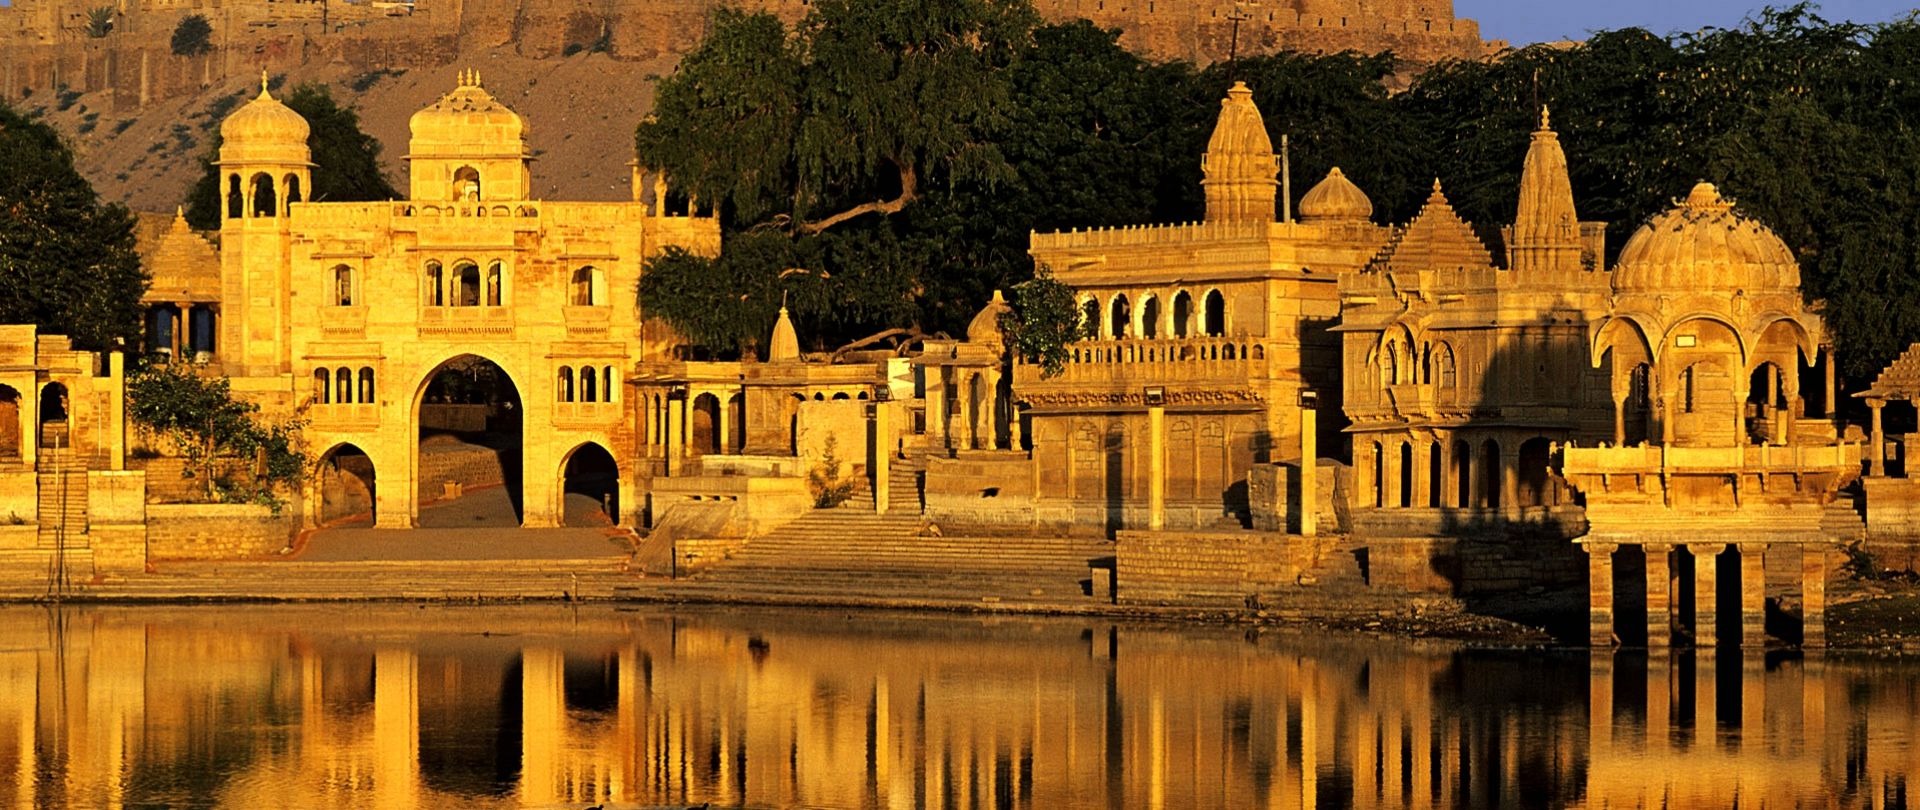 Delhi, Mandawa, Bikaner, Jaisalmer, Khimsar, Jodhpur, Udaipur, Deogarh, Jaipur & Agra